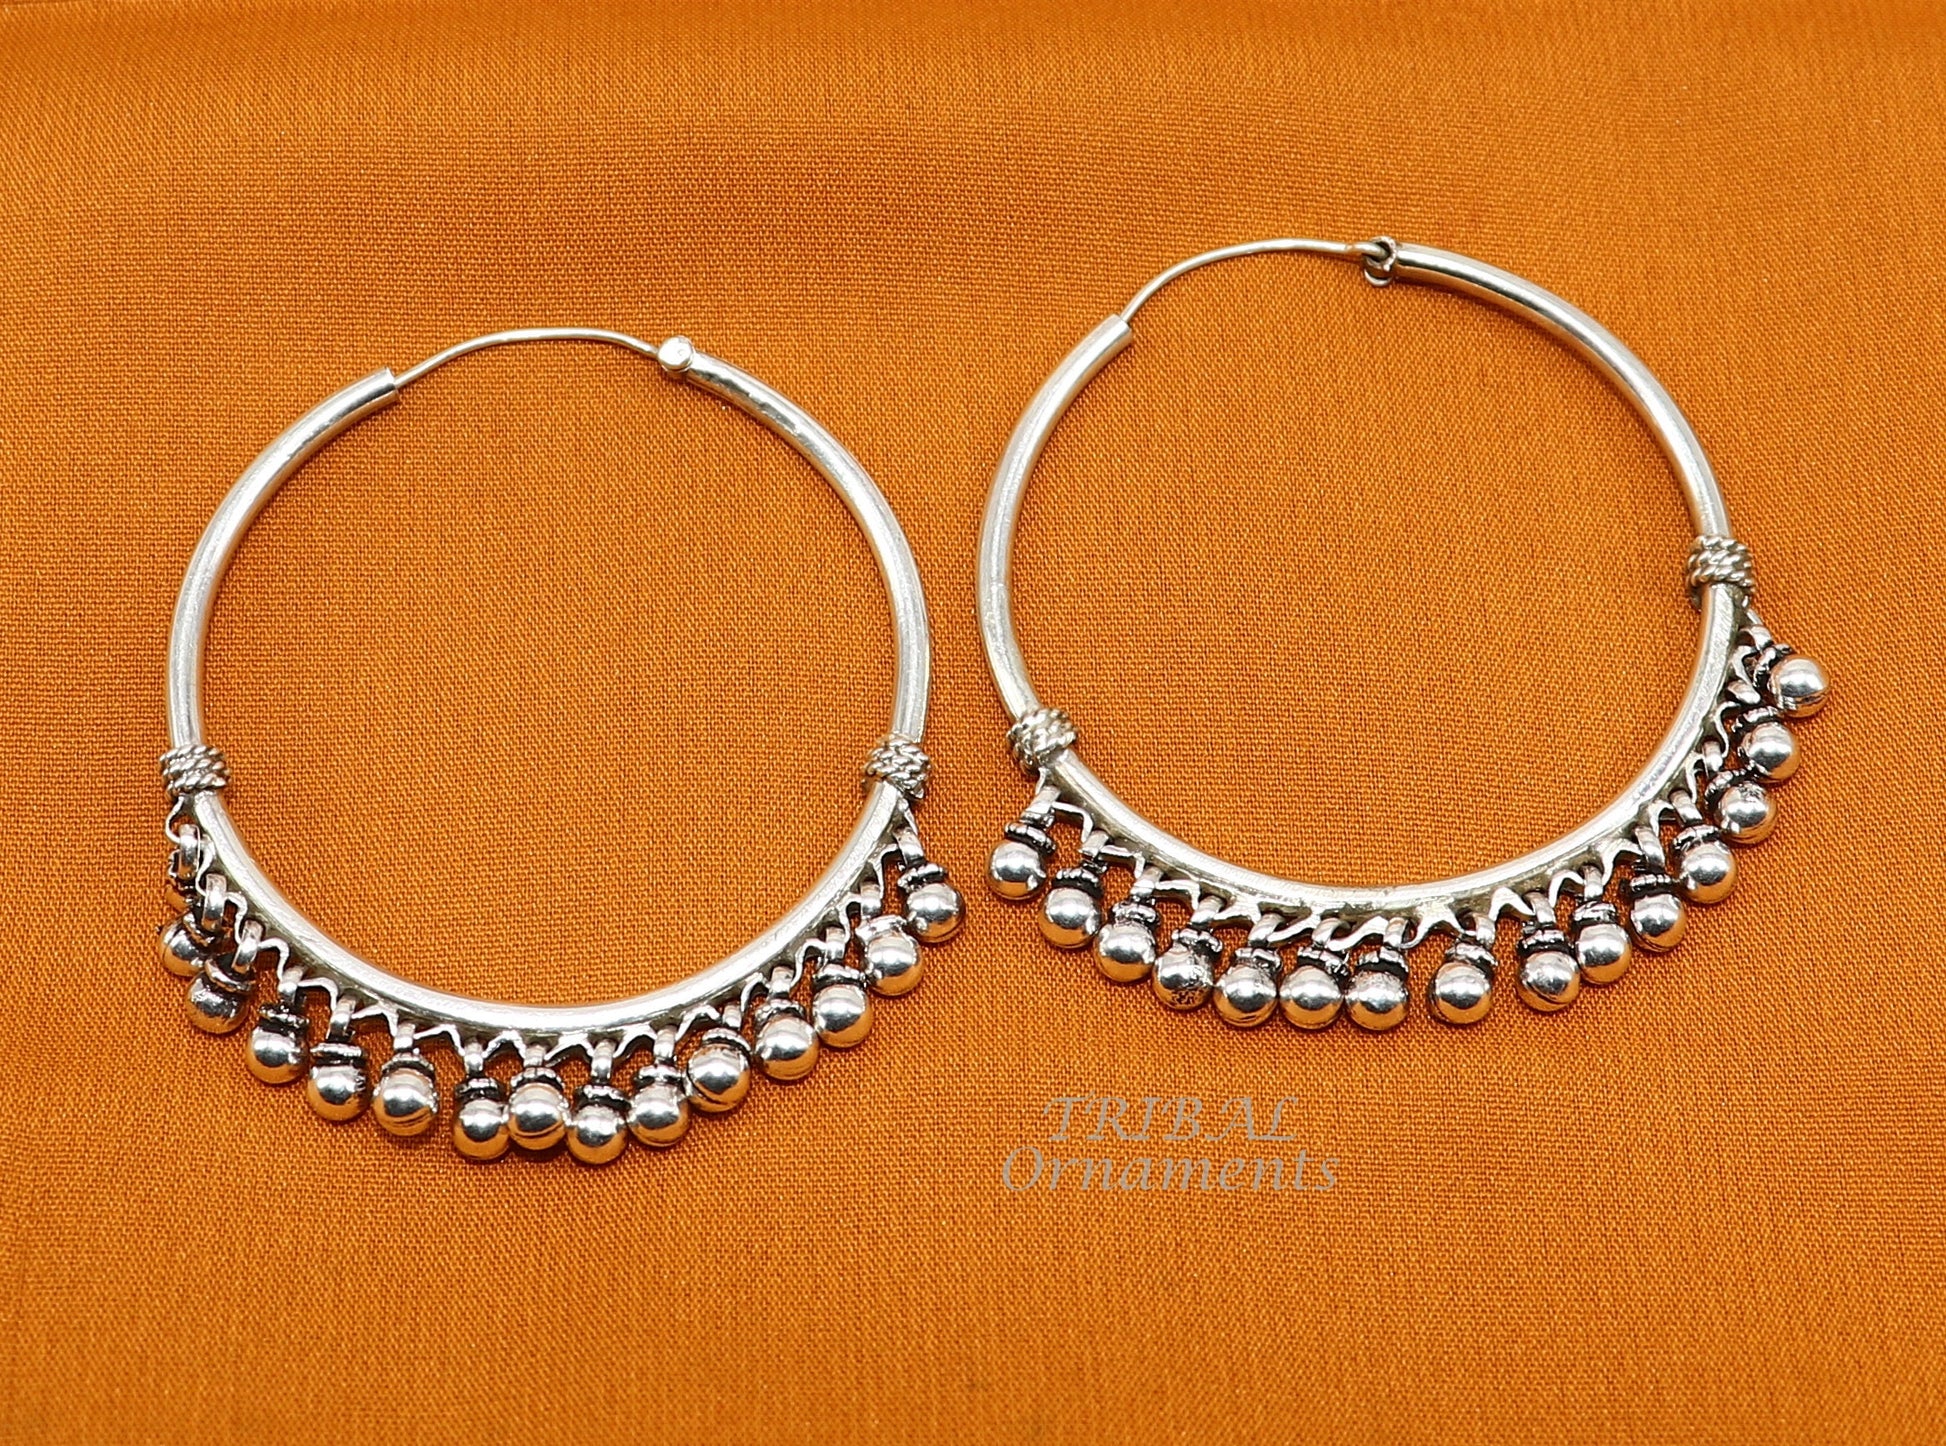 925 sterling silver handmade hoop earring elegant delegate Bali, hanging bells, hook, hoop gifting gorgeous tribal customized jewelry s1117 - TRIBAL ORNAMENTS